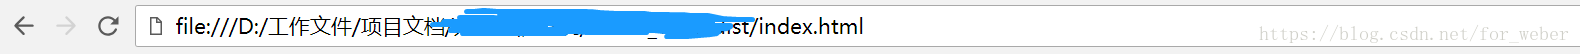 如何解决Vue项目打包后打开index.html页面显示空白以及图片路径错误的问题